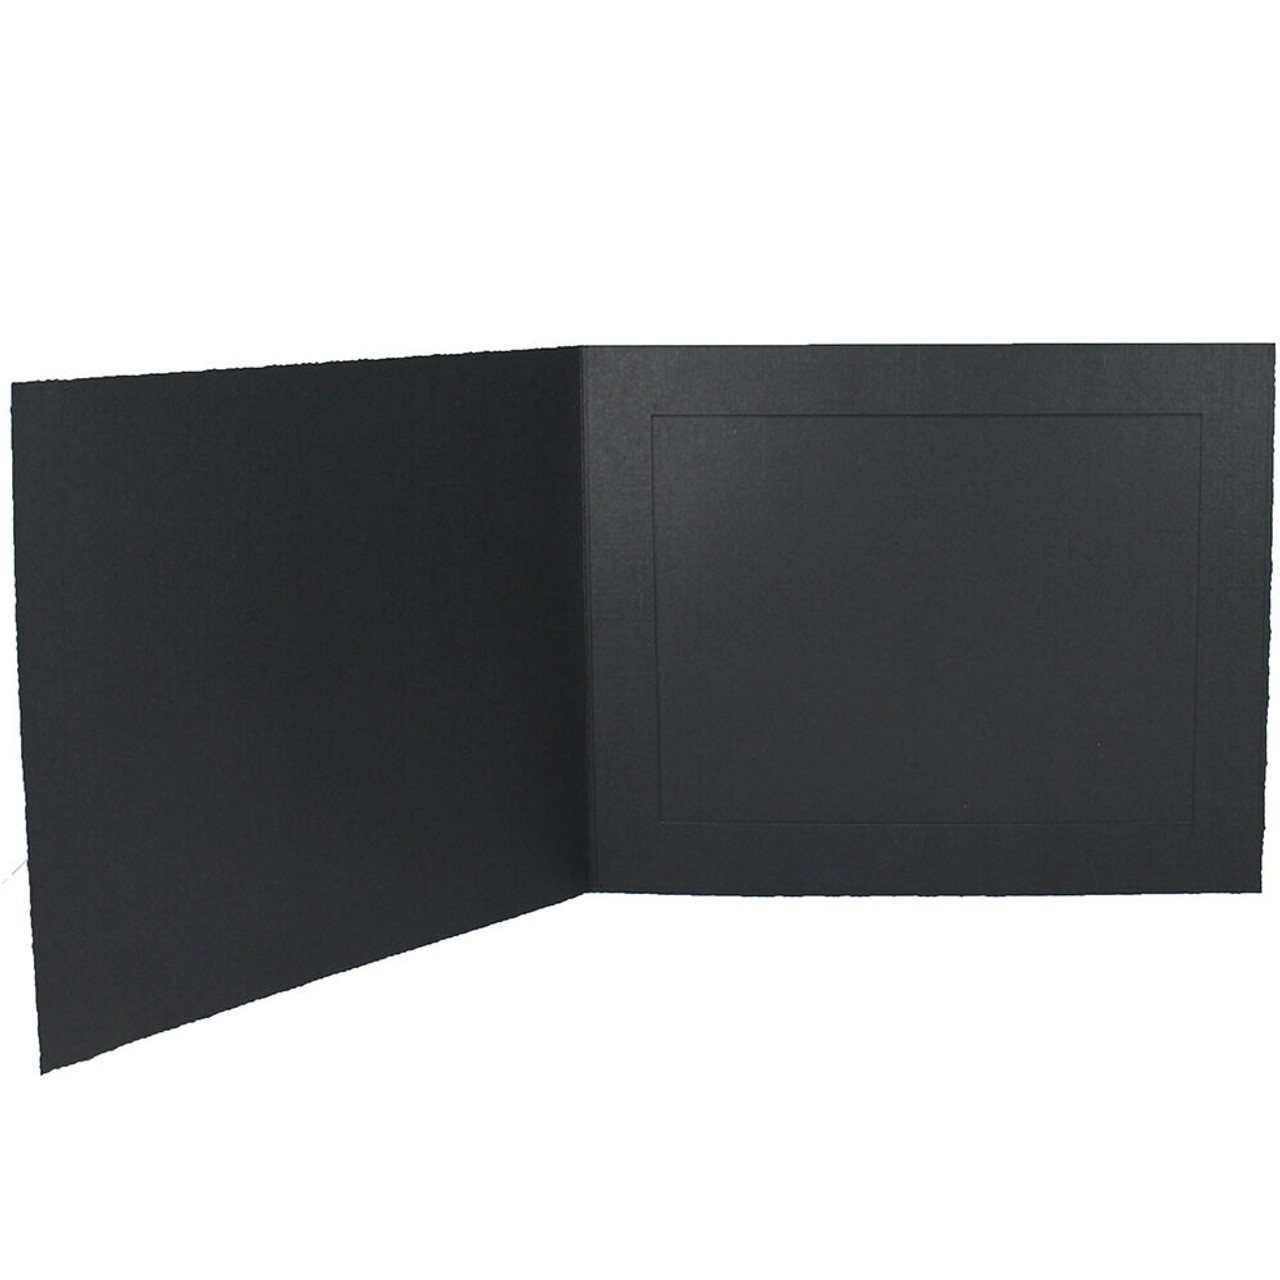 Full Color Black Certificate Holder (Holds 8.5 x 11